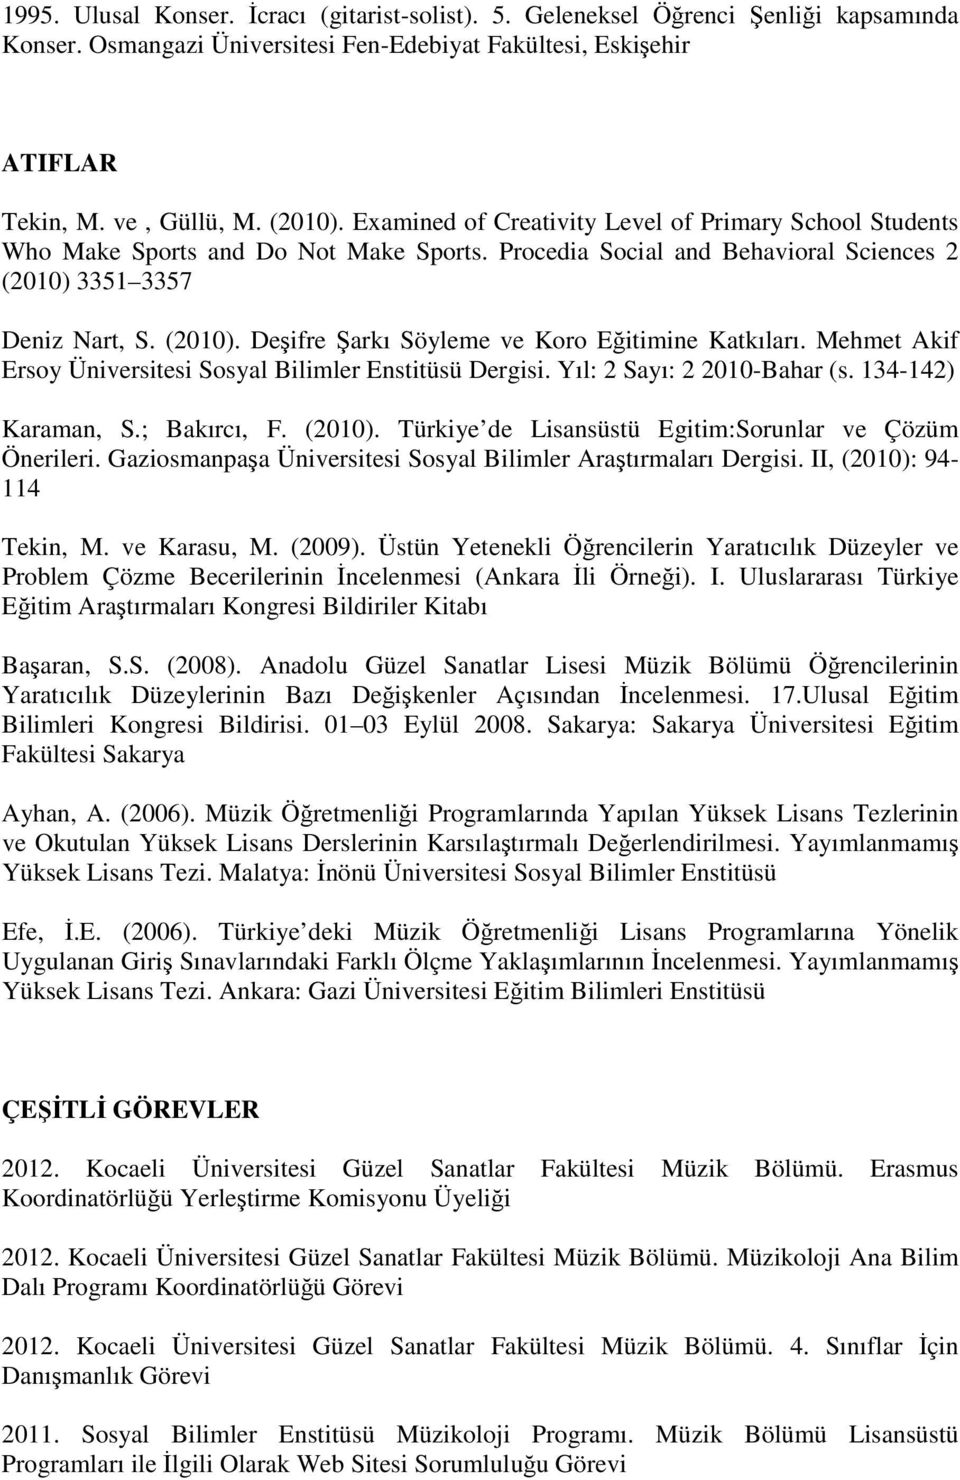 Mehmet Akif Ersoy Üniversitesi Sosyal Bilimler Enstitüsü Dergisi. Yıl: 2 Sayı: 2 2010-Bahar (s. 134-142) Karaman, S.; Bakırcı, F. (2010). Türkiye de Lisansüstü Egitim:Sorunlar ve Çözüm Önerileri.